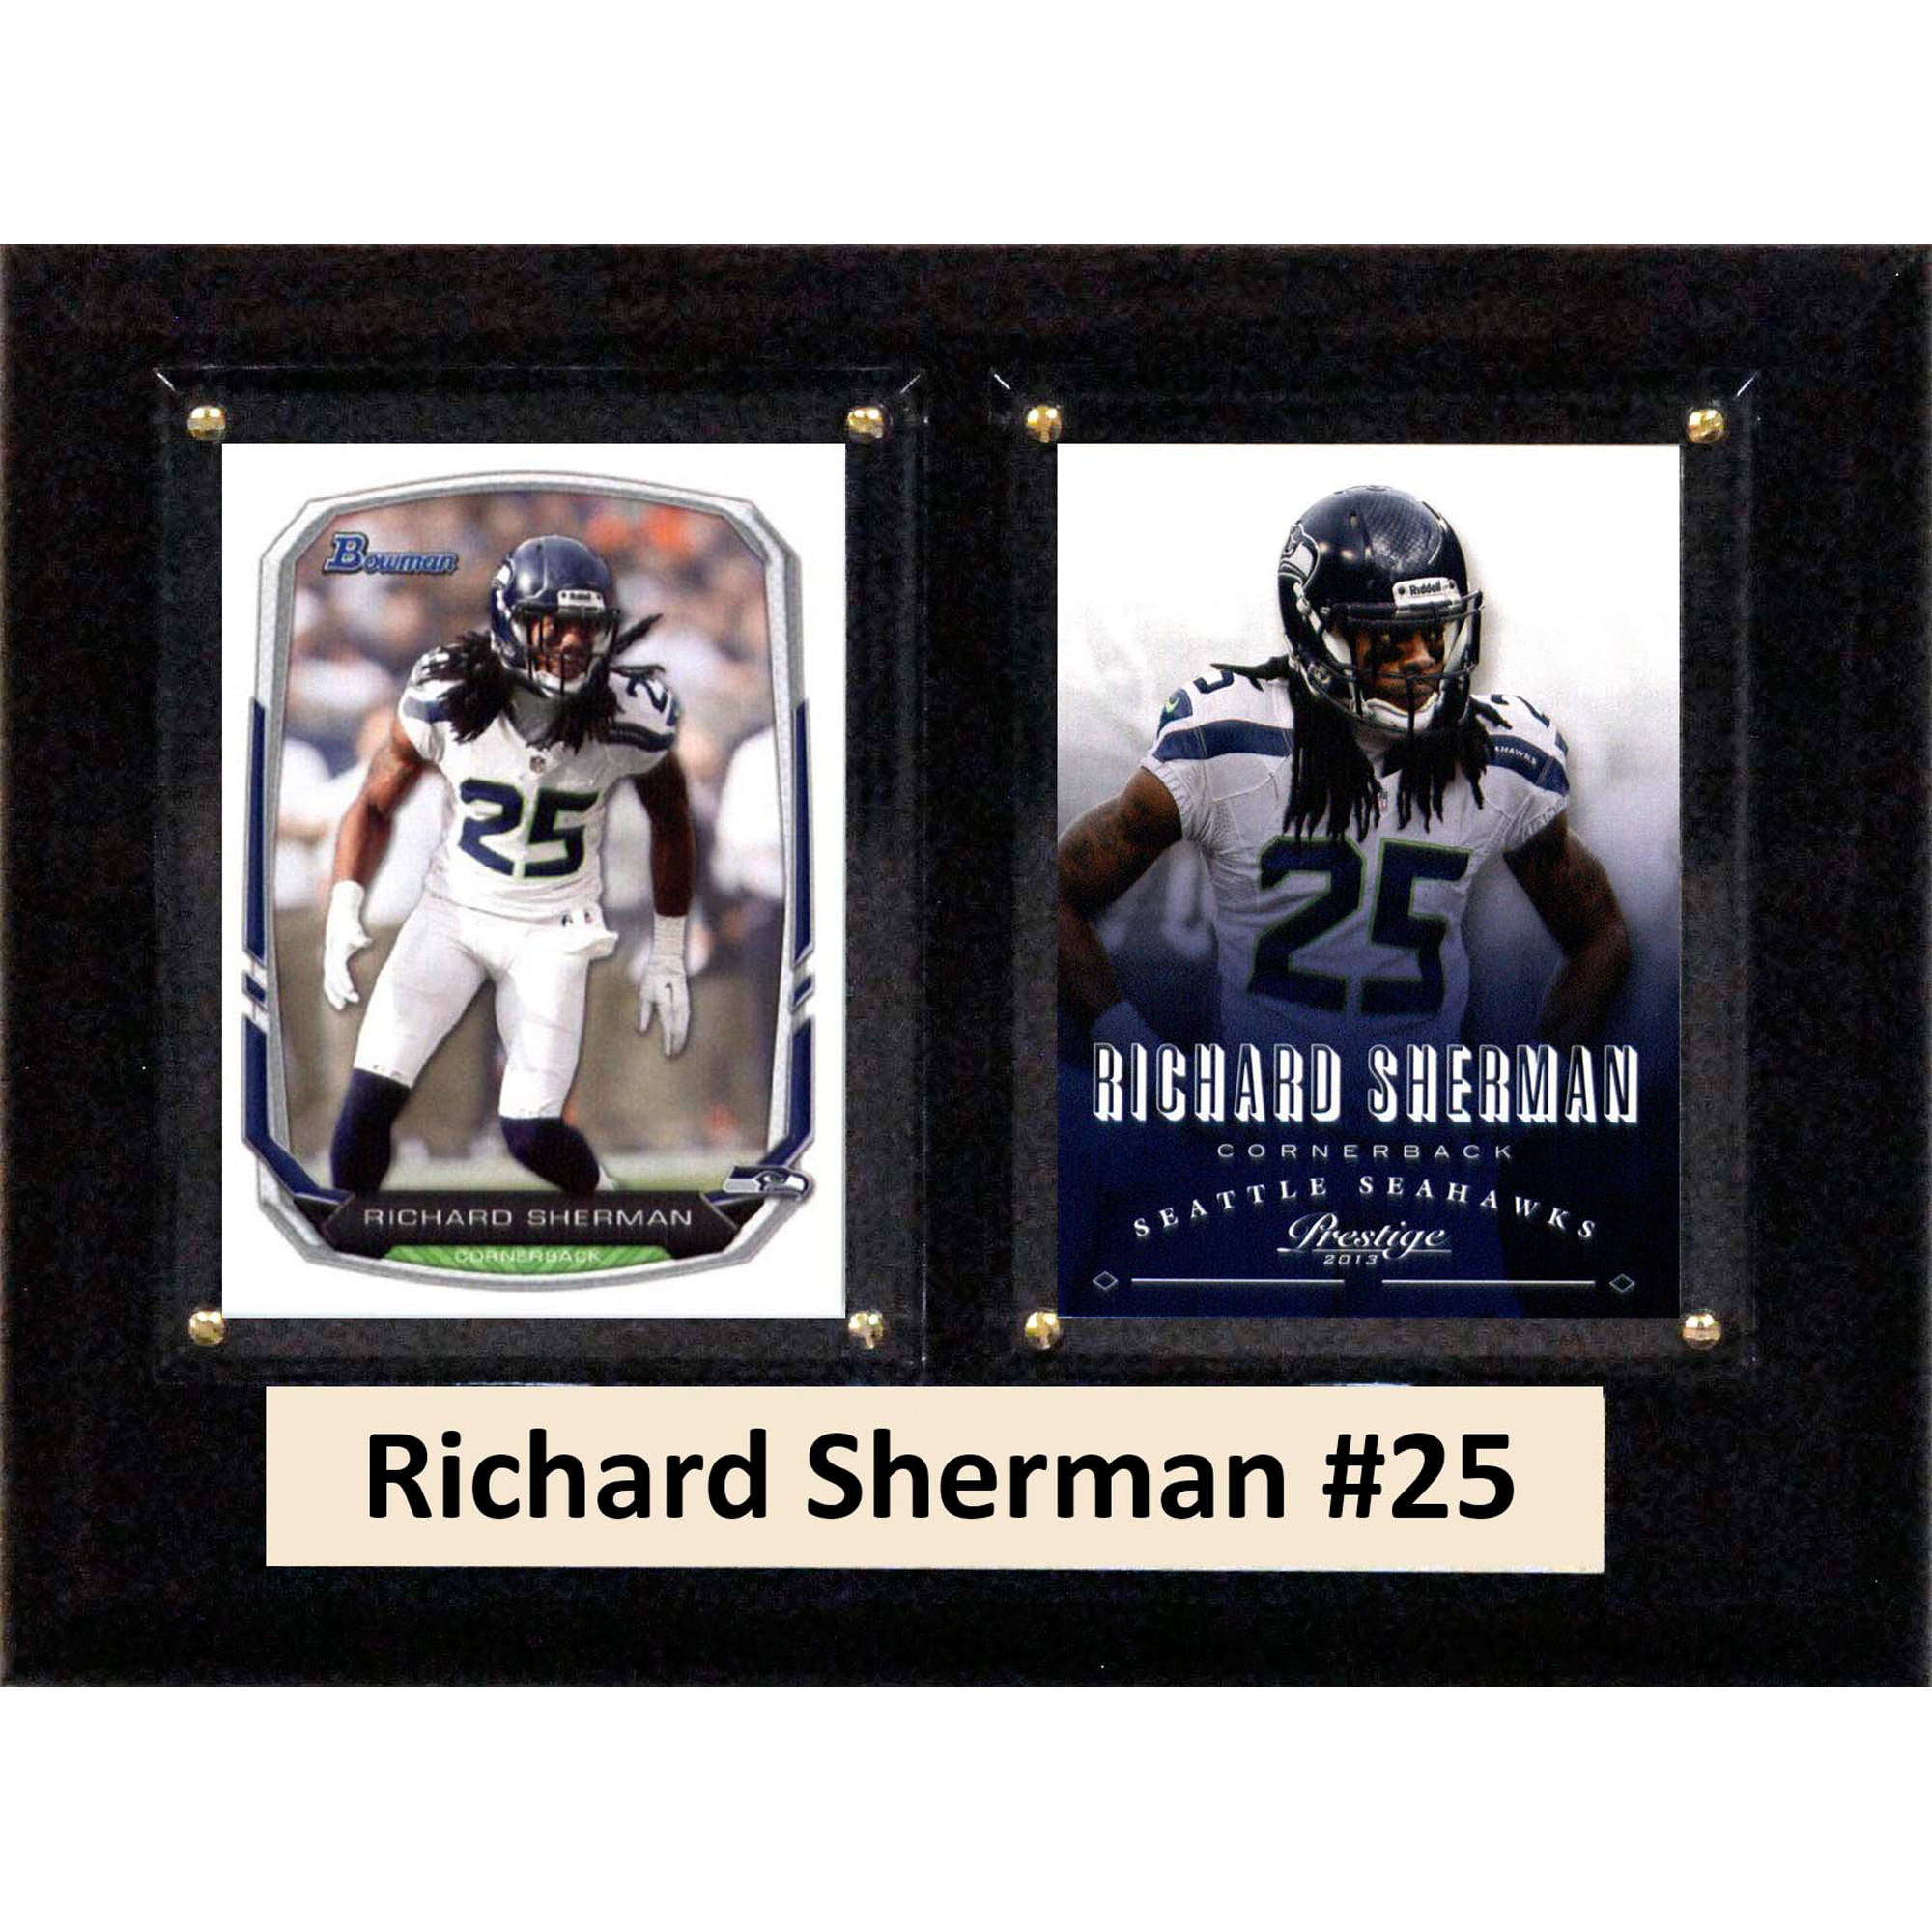 richard sherman jersey card